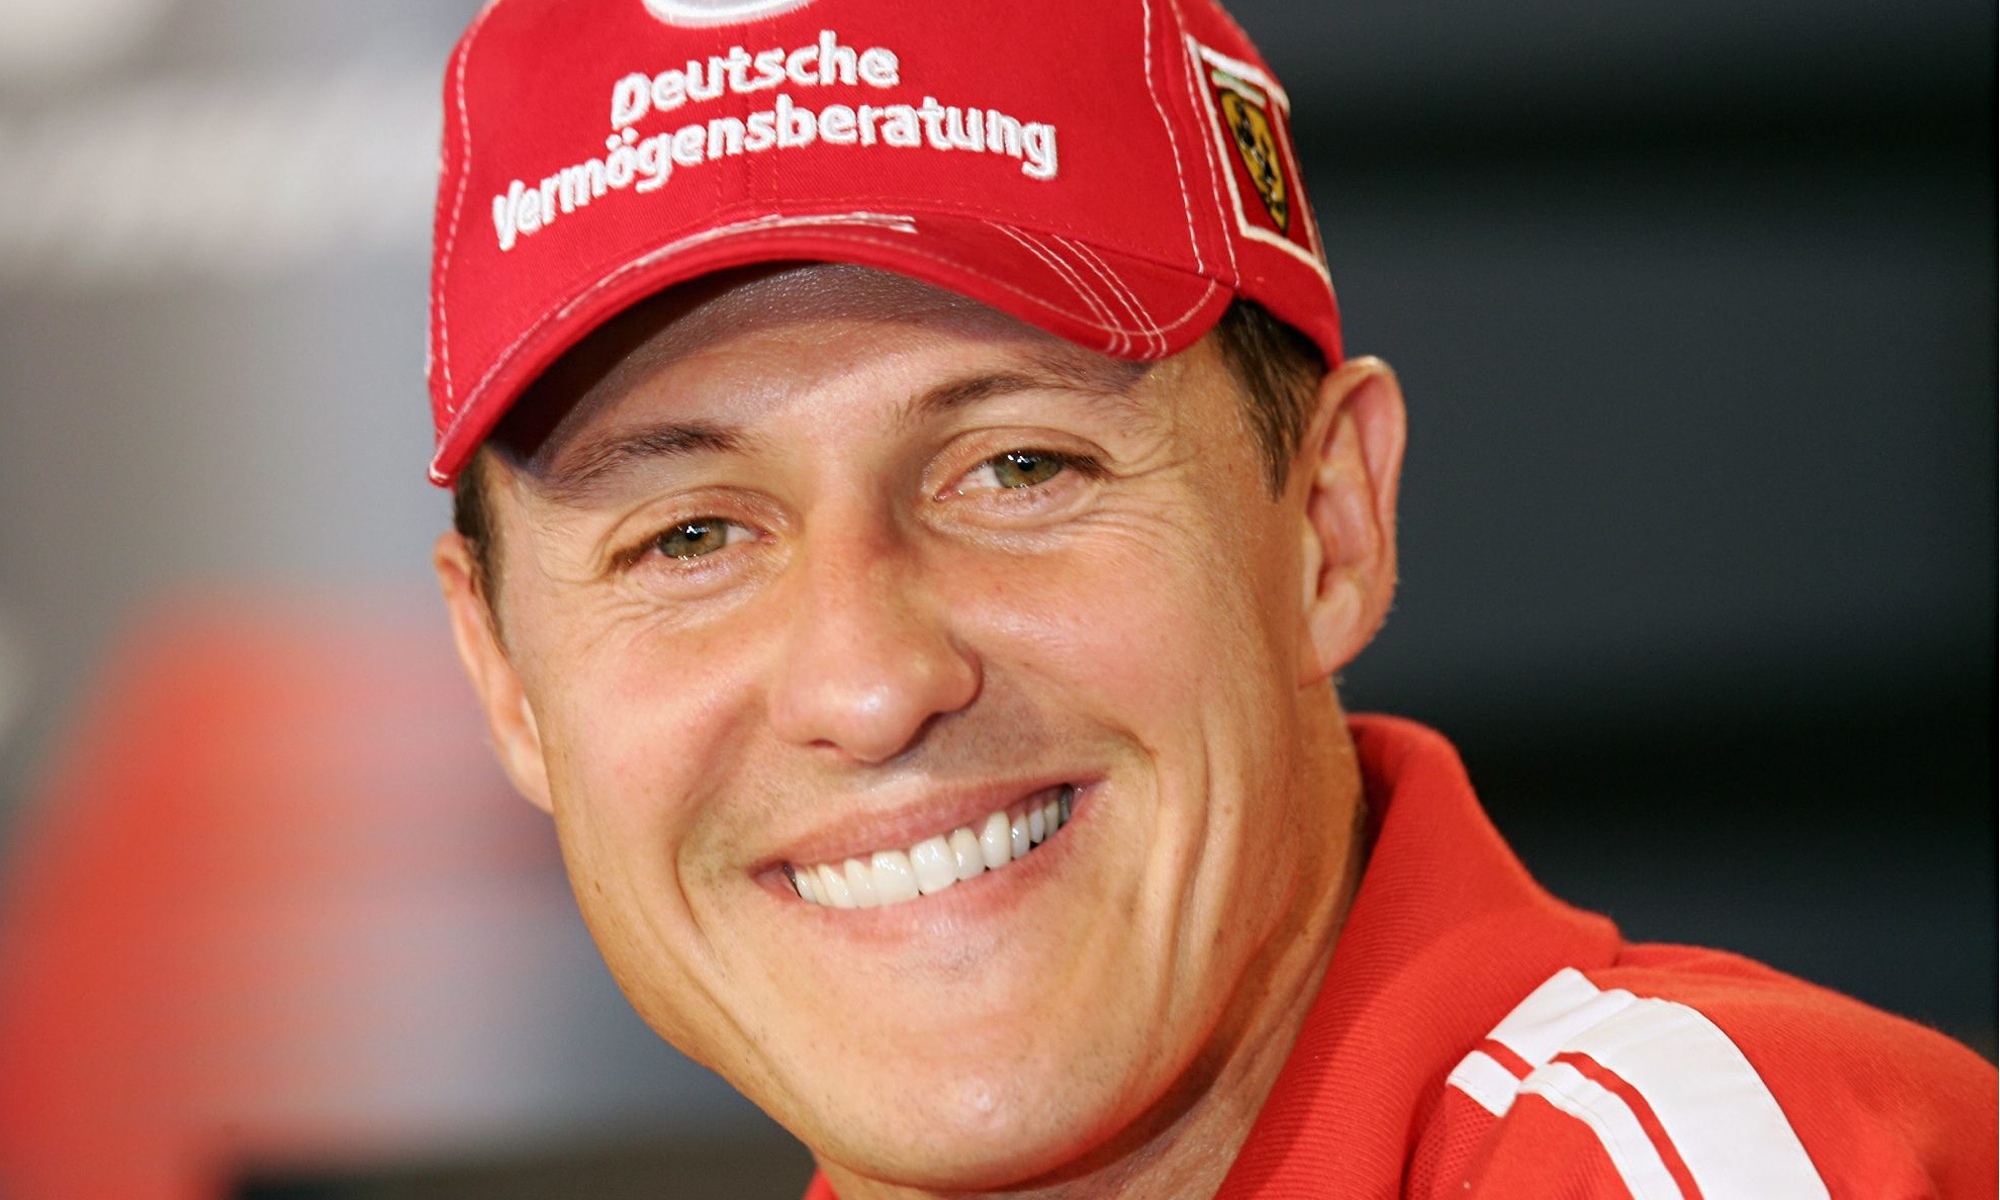 Schumacher in boyu 14 santim kısaldı